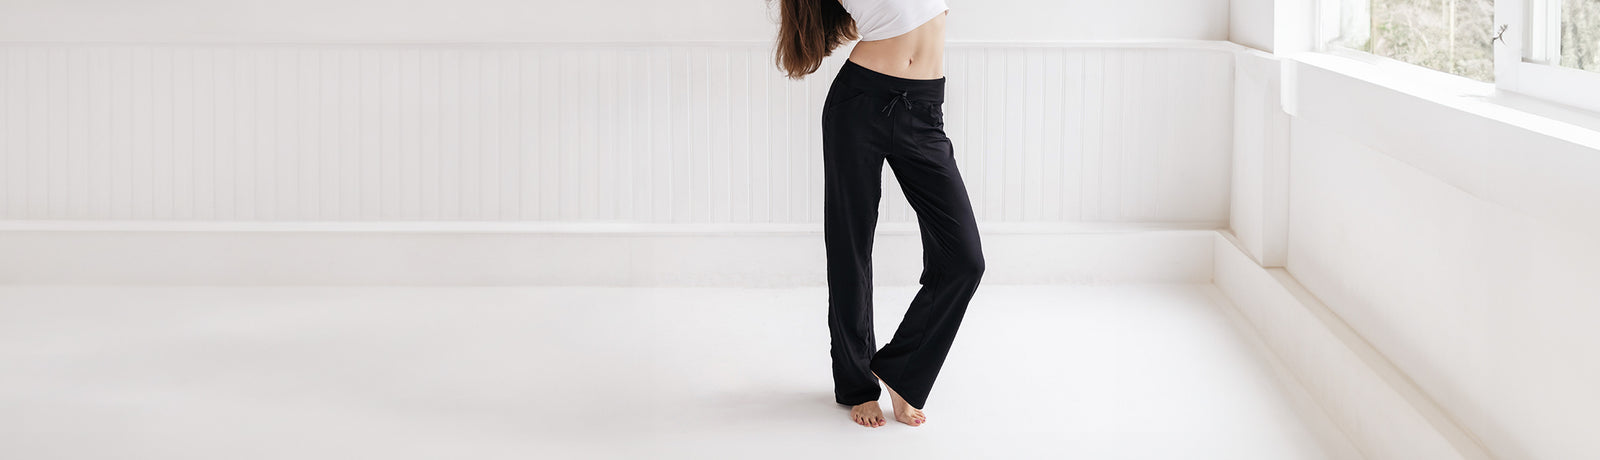 Yogipace 27/29/31/33/35/37 Women's Bootcut Yoga Pants, Black